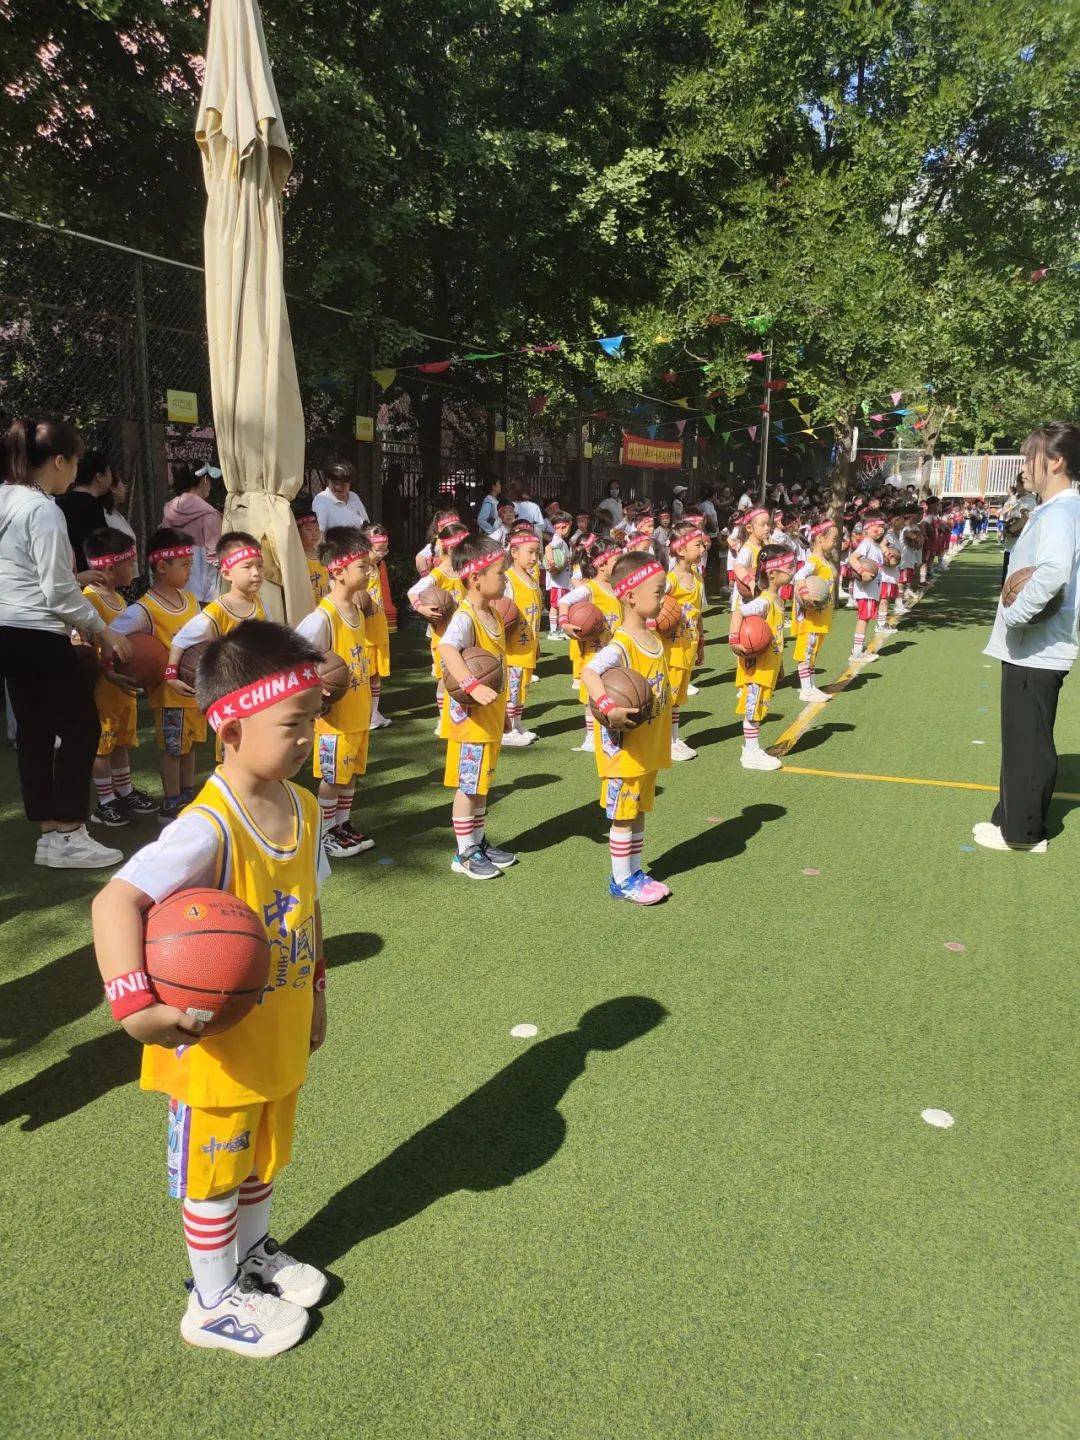 sports大一班篮球操展示让我们先来欣赏大班幼儿带来的篮球操展示吧!